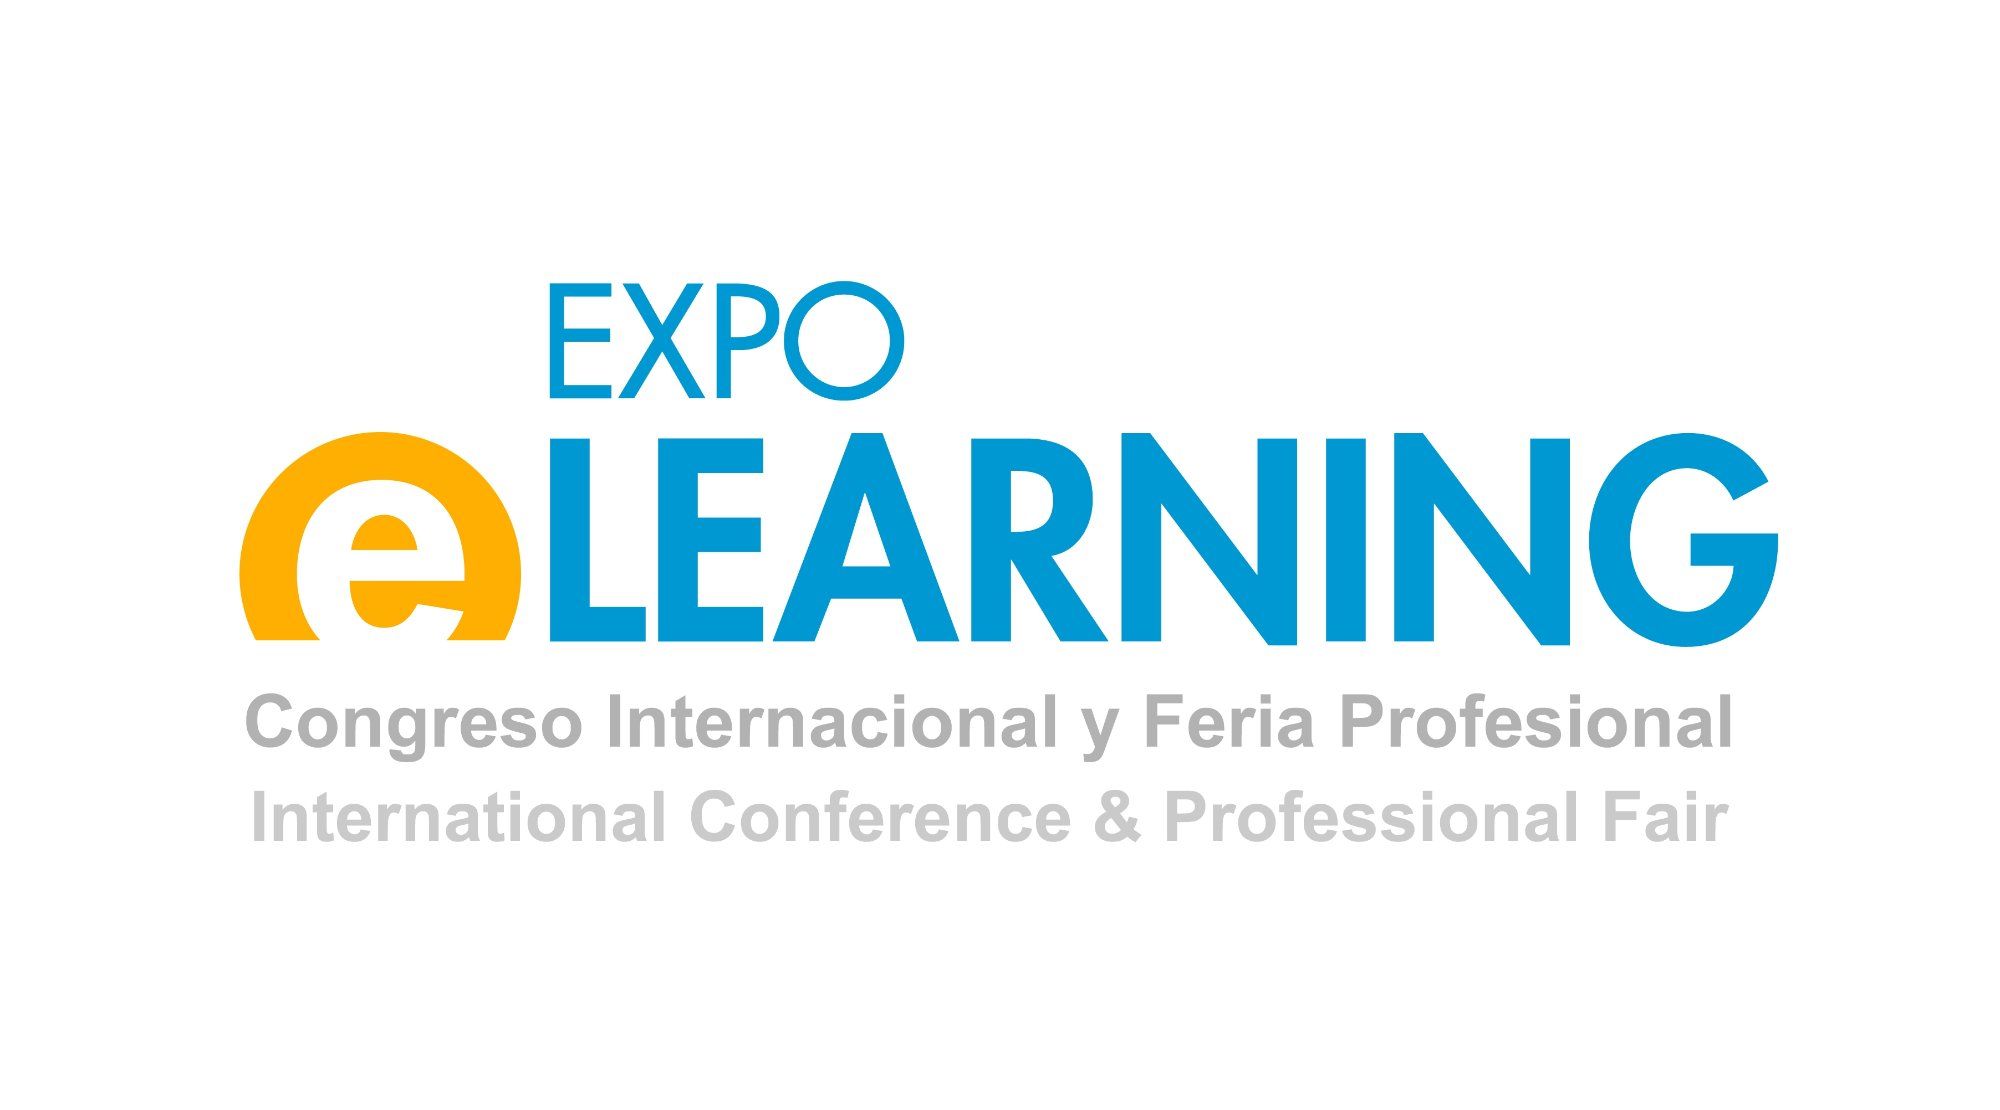 Expo Elearning: Congreso Internacional Y Feria Profesional